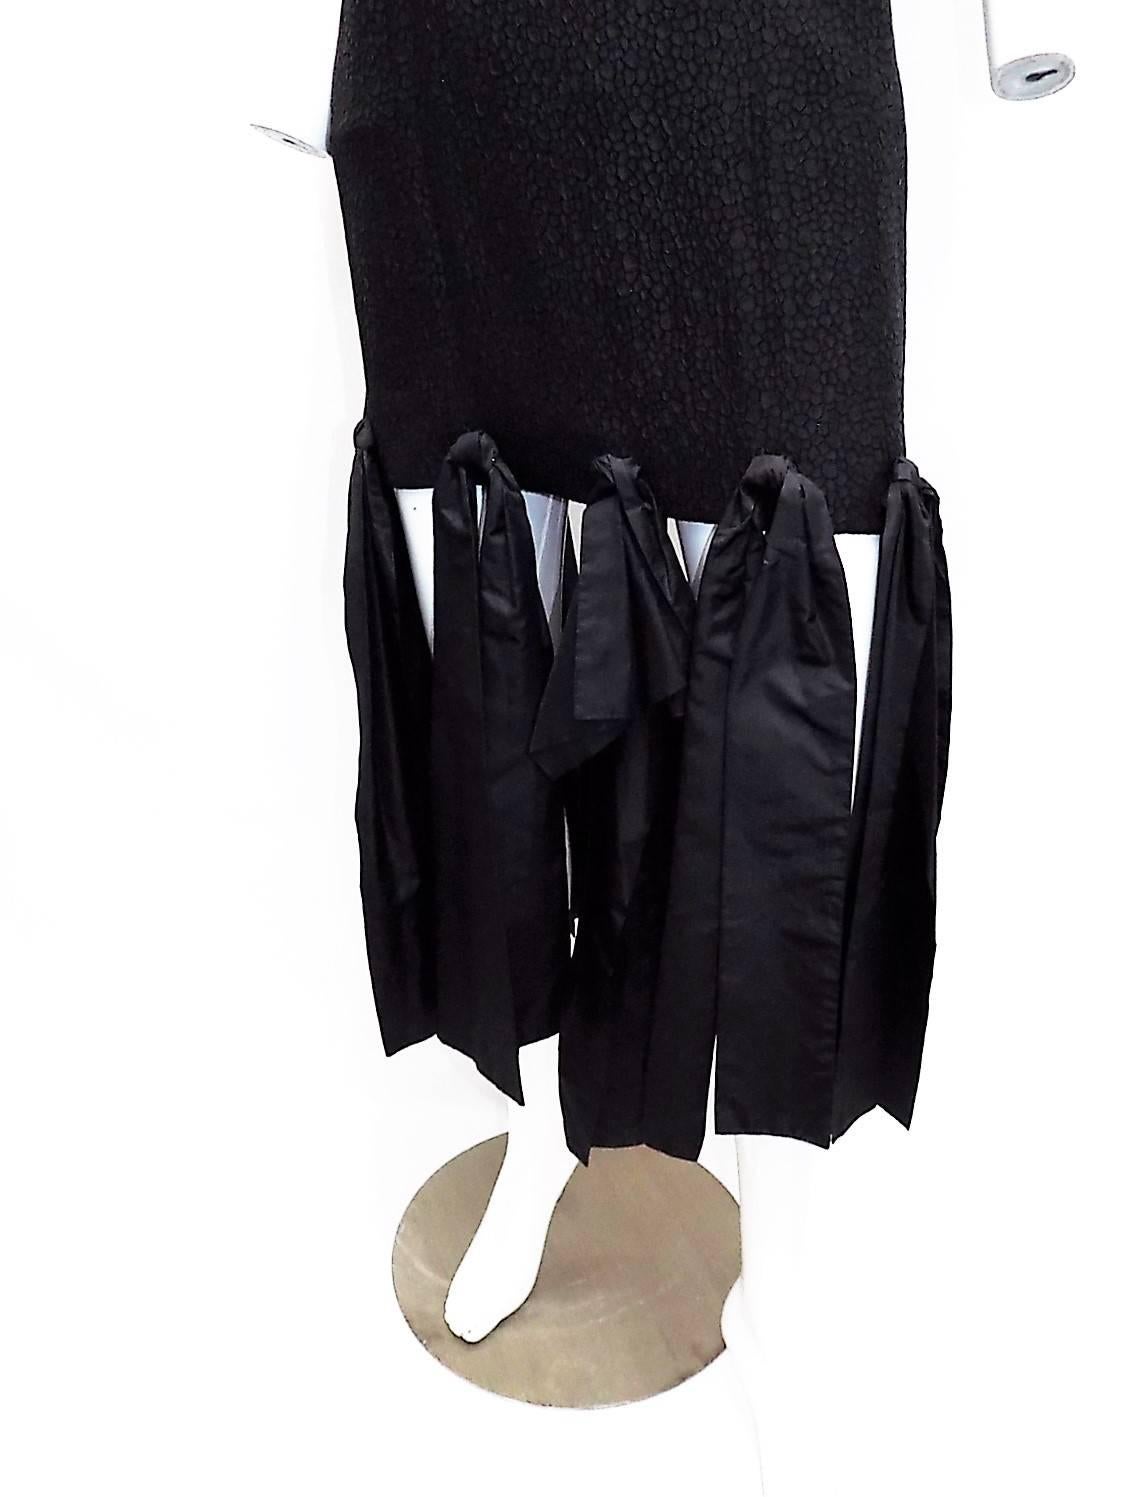 Black vintage Lanvin paris black cocktail dress with bows  For Sale